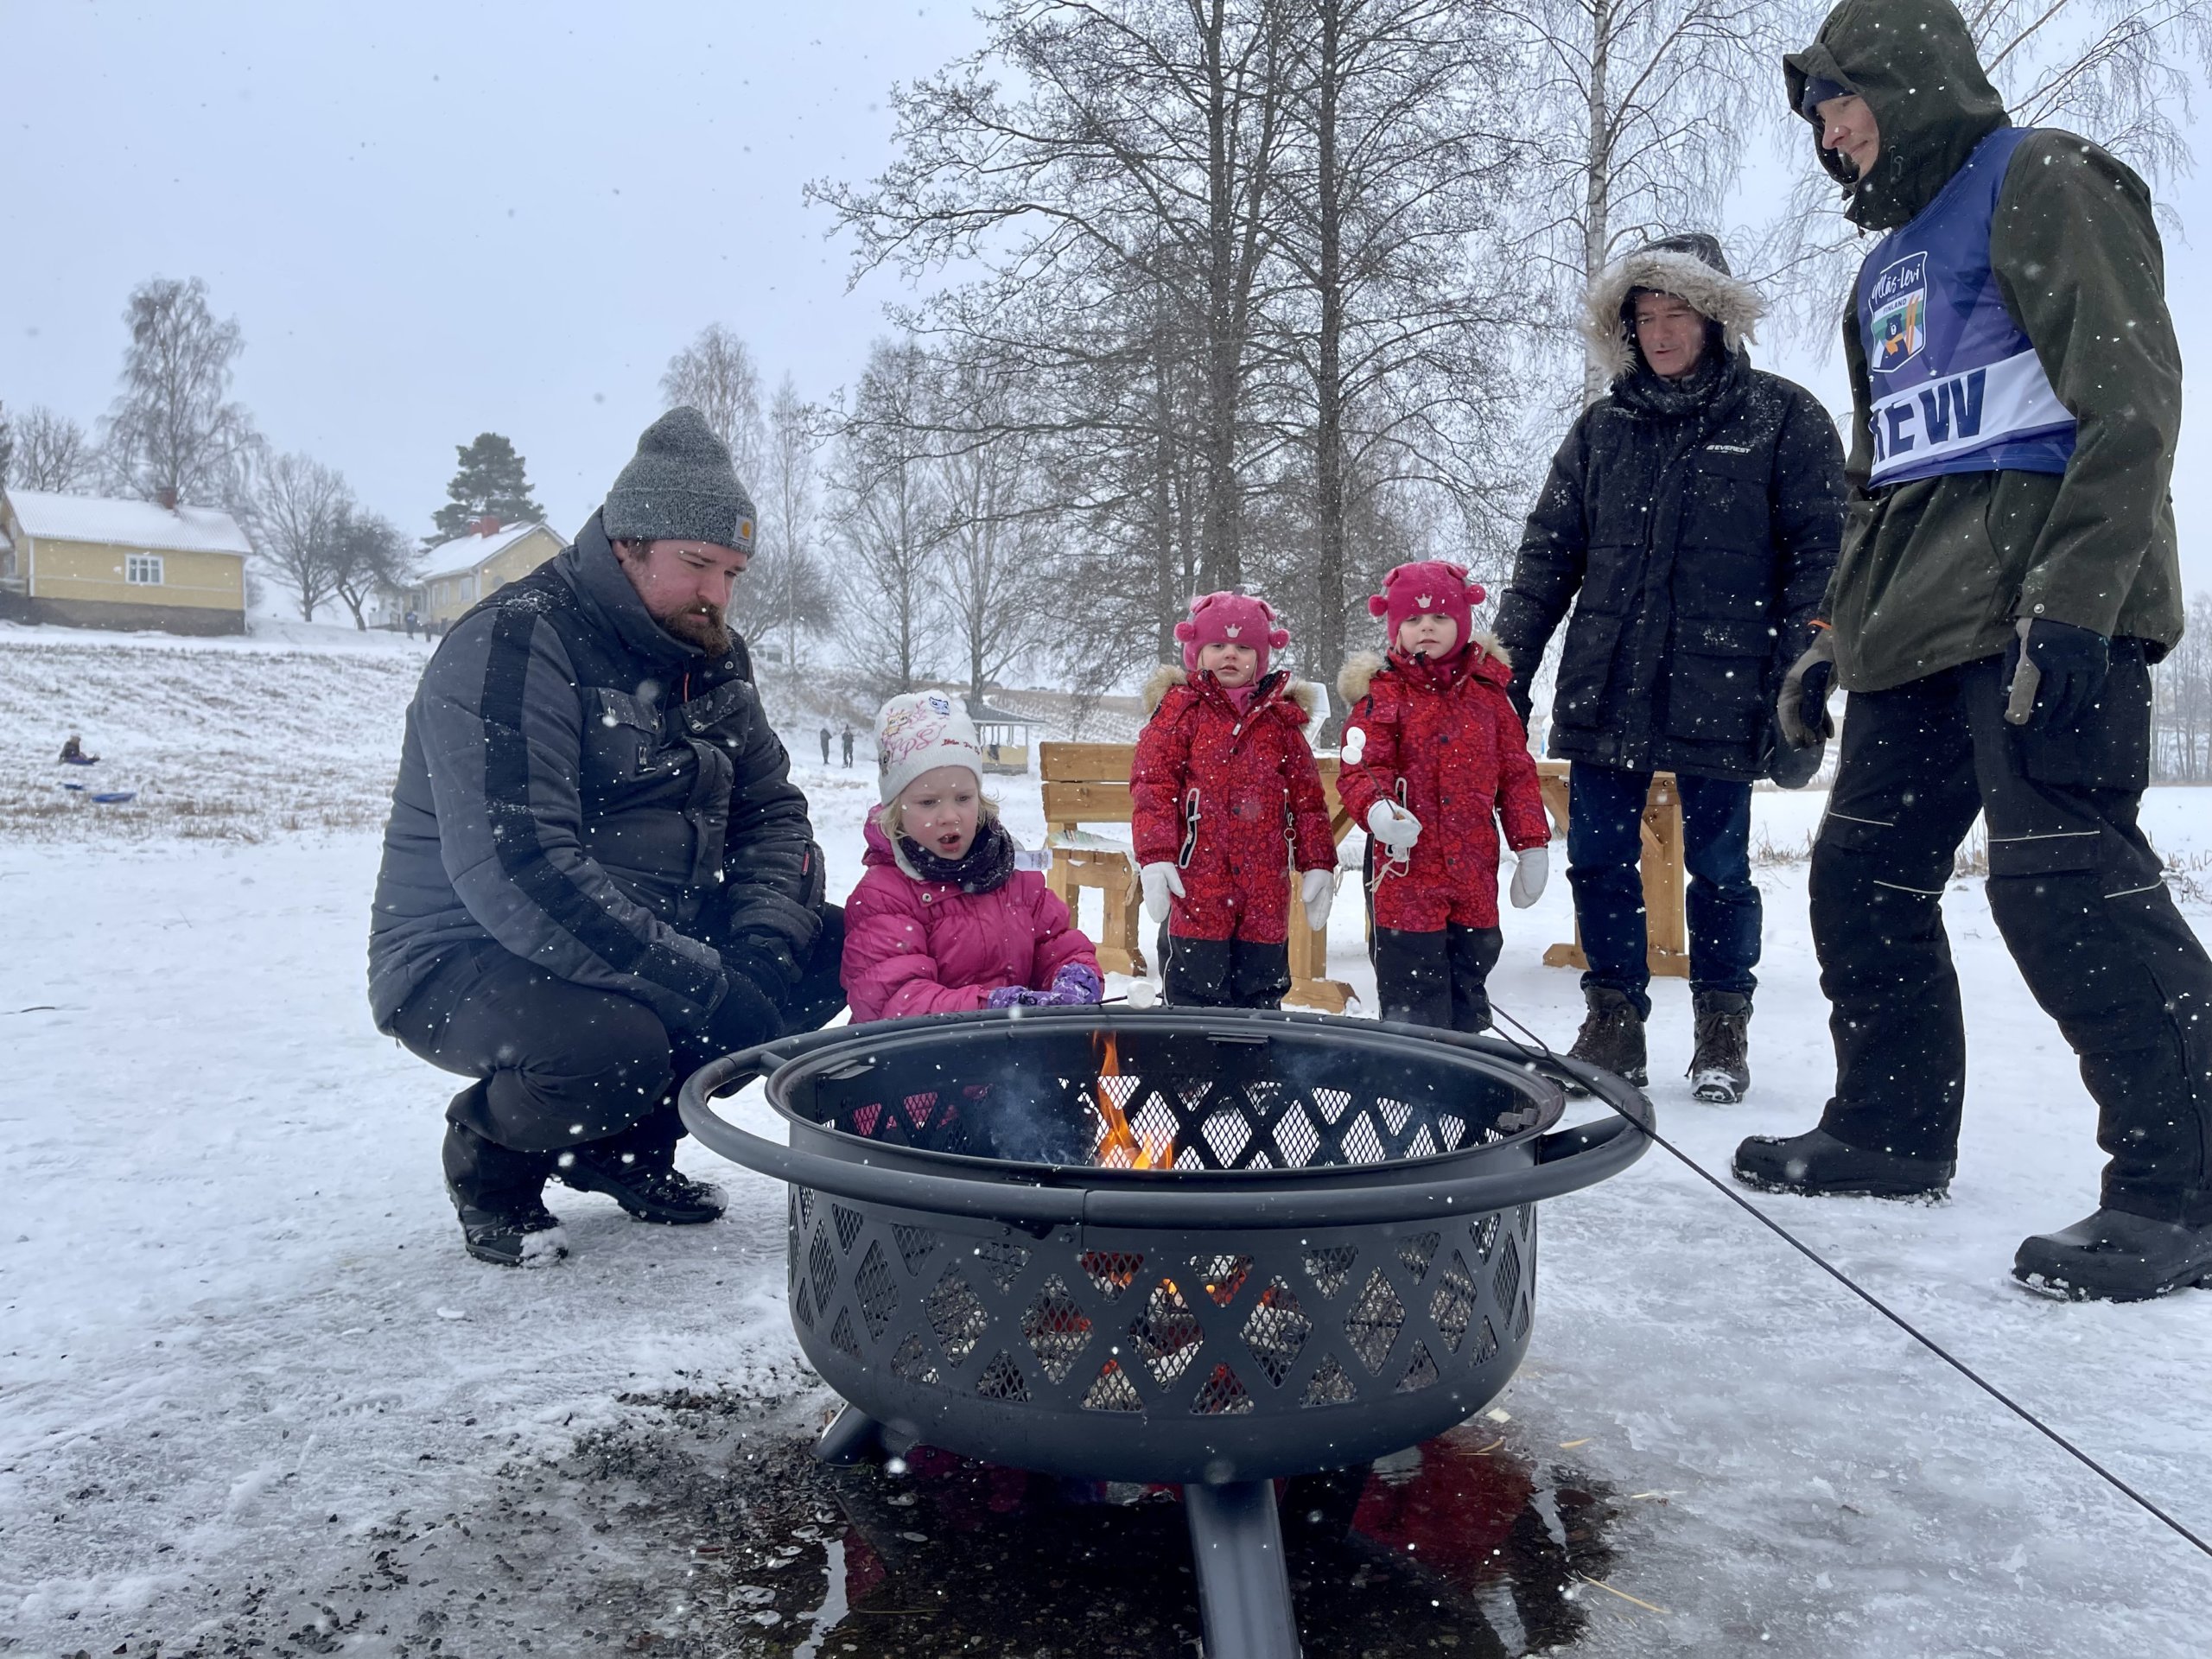 Kolme pientä tyttöä ja kaksi miestä paahtavat vaahtokarkkeja talvimaisemassa nuotion ääressä.